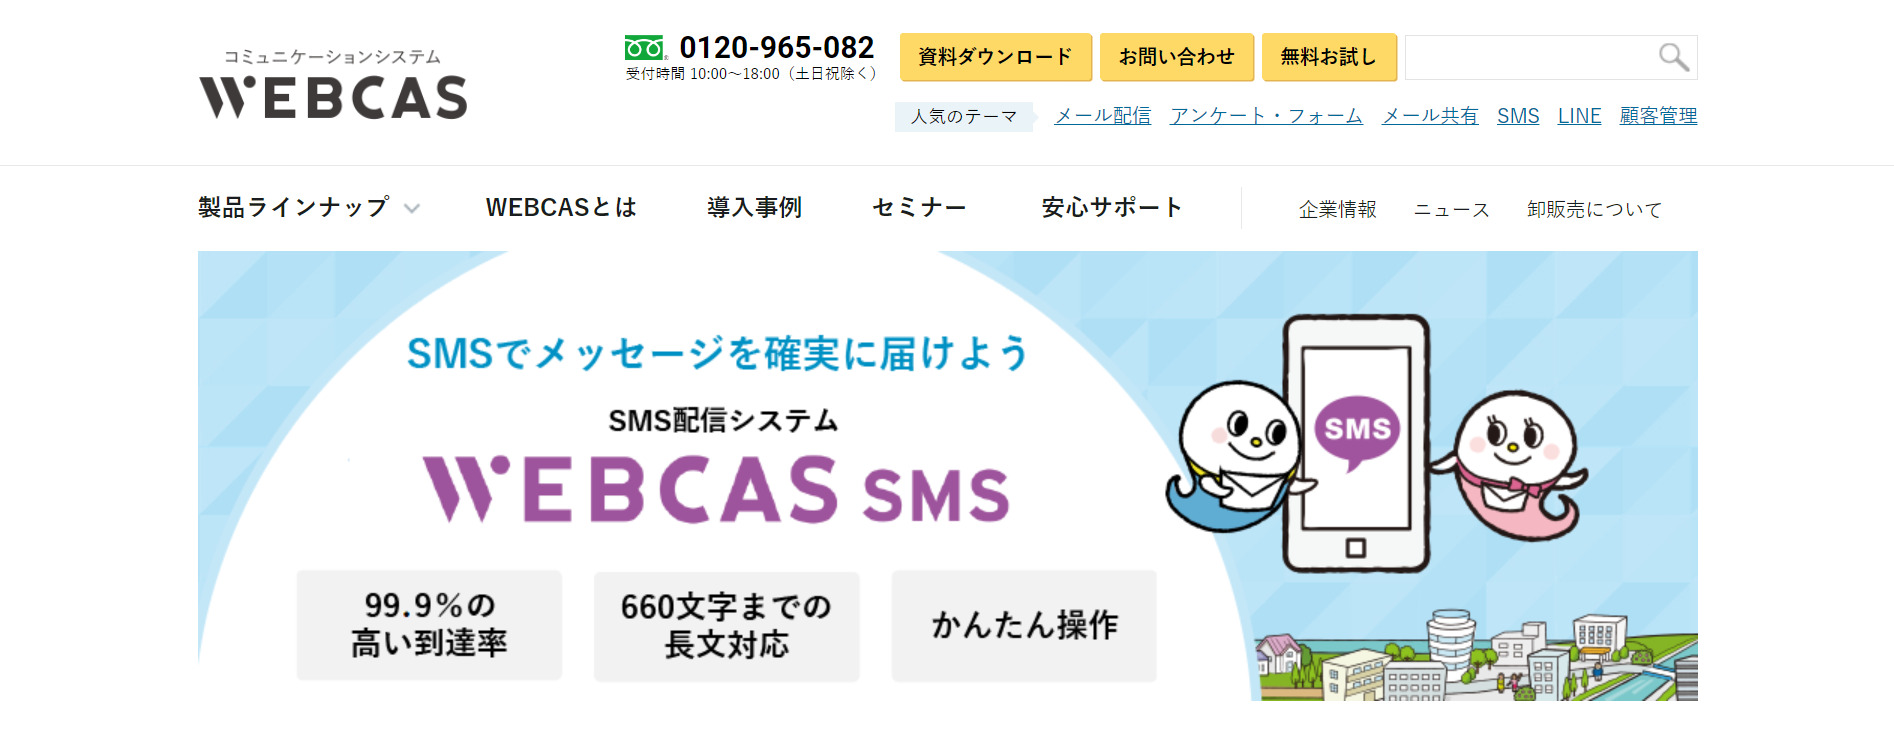 WEBCAS SMS